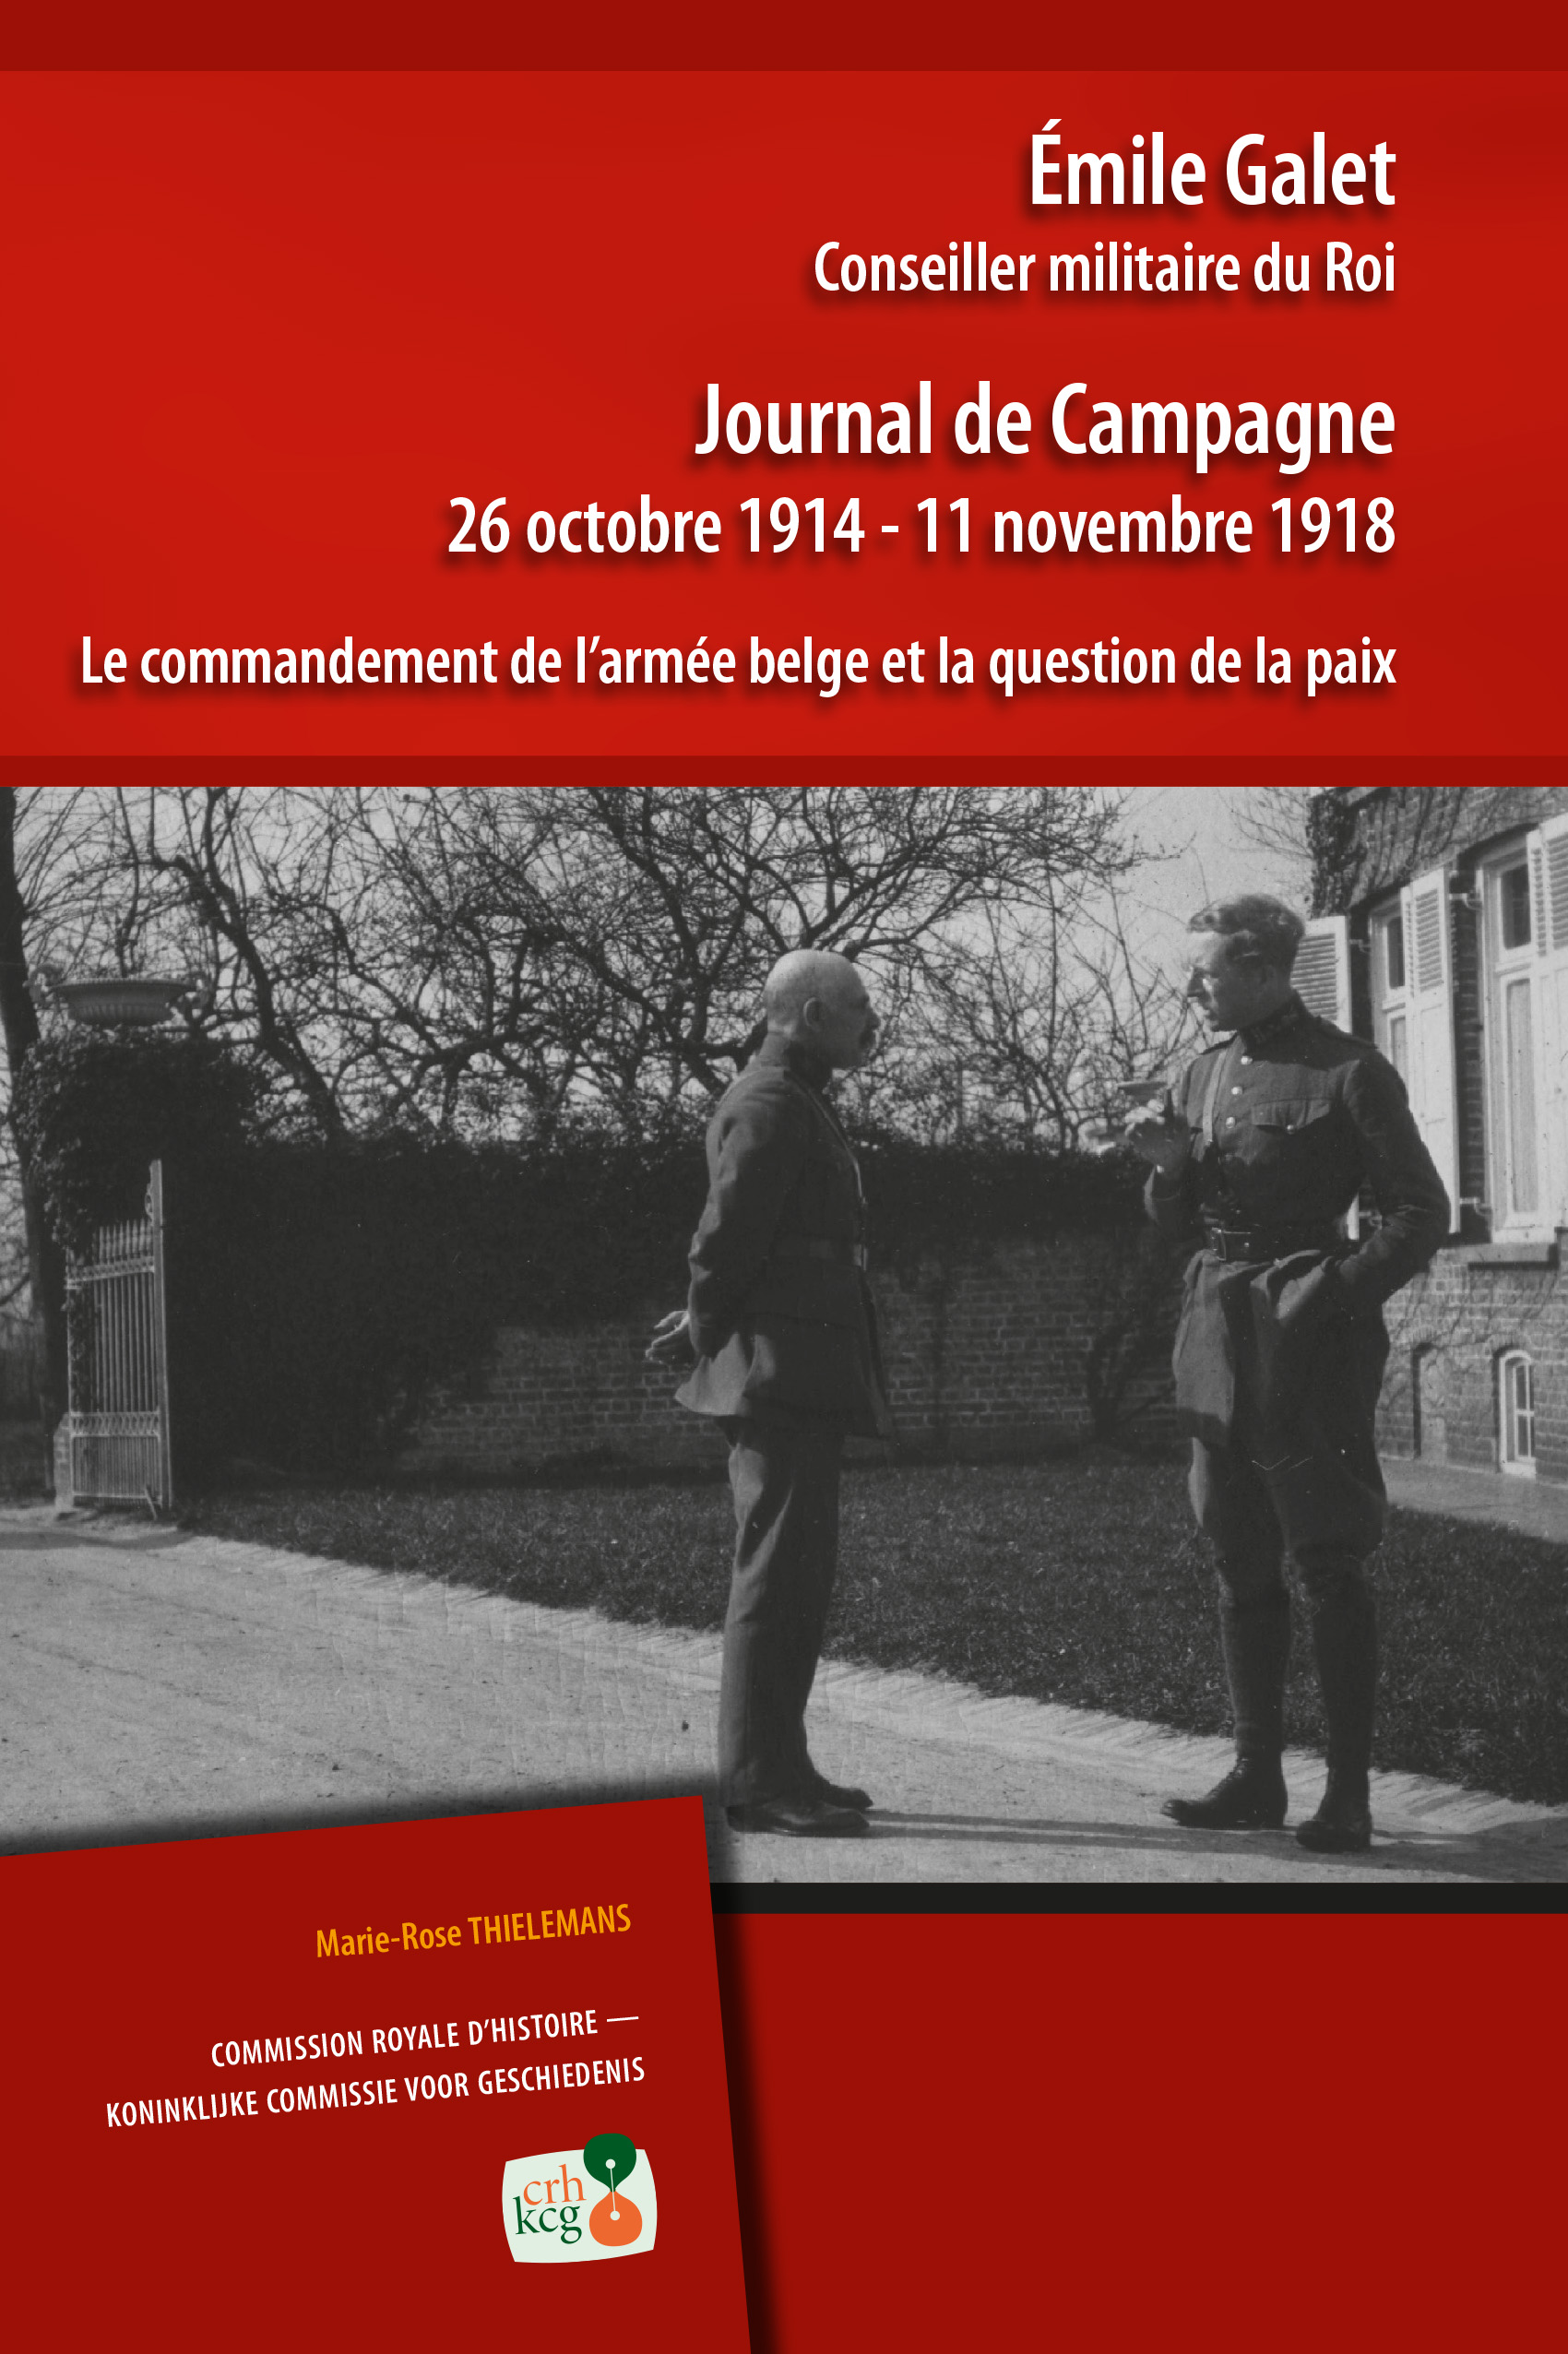 ÉMILE GALET, JOURNAL DE CAMPAGNE (kcg)